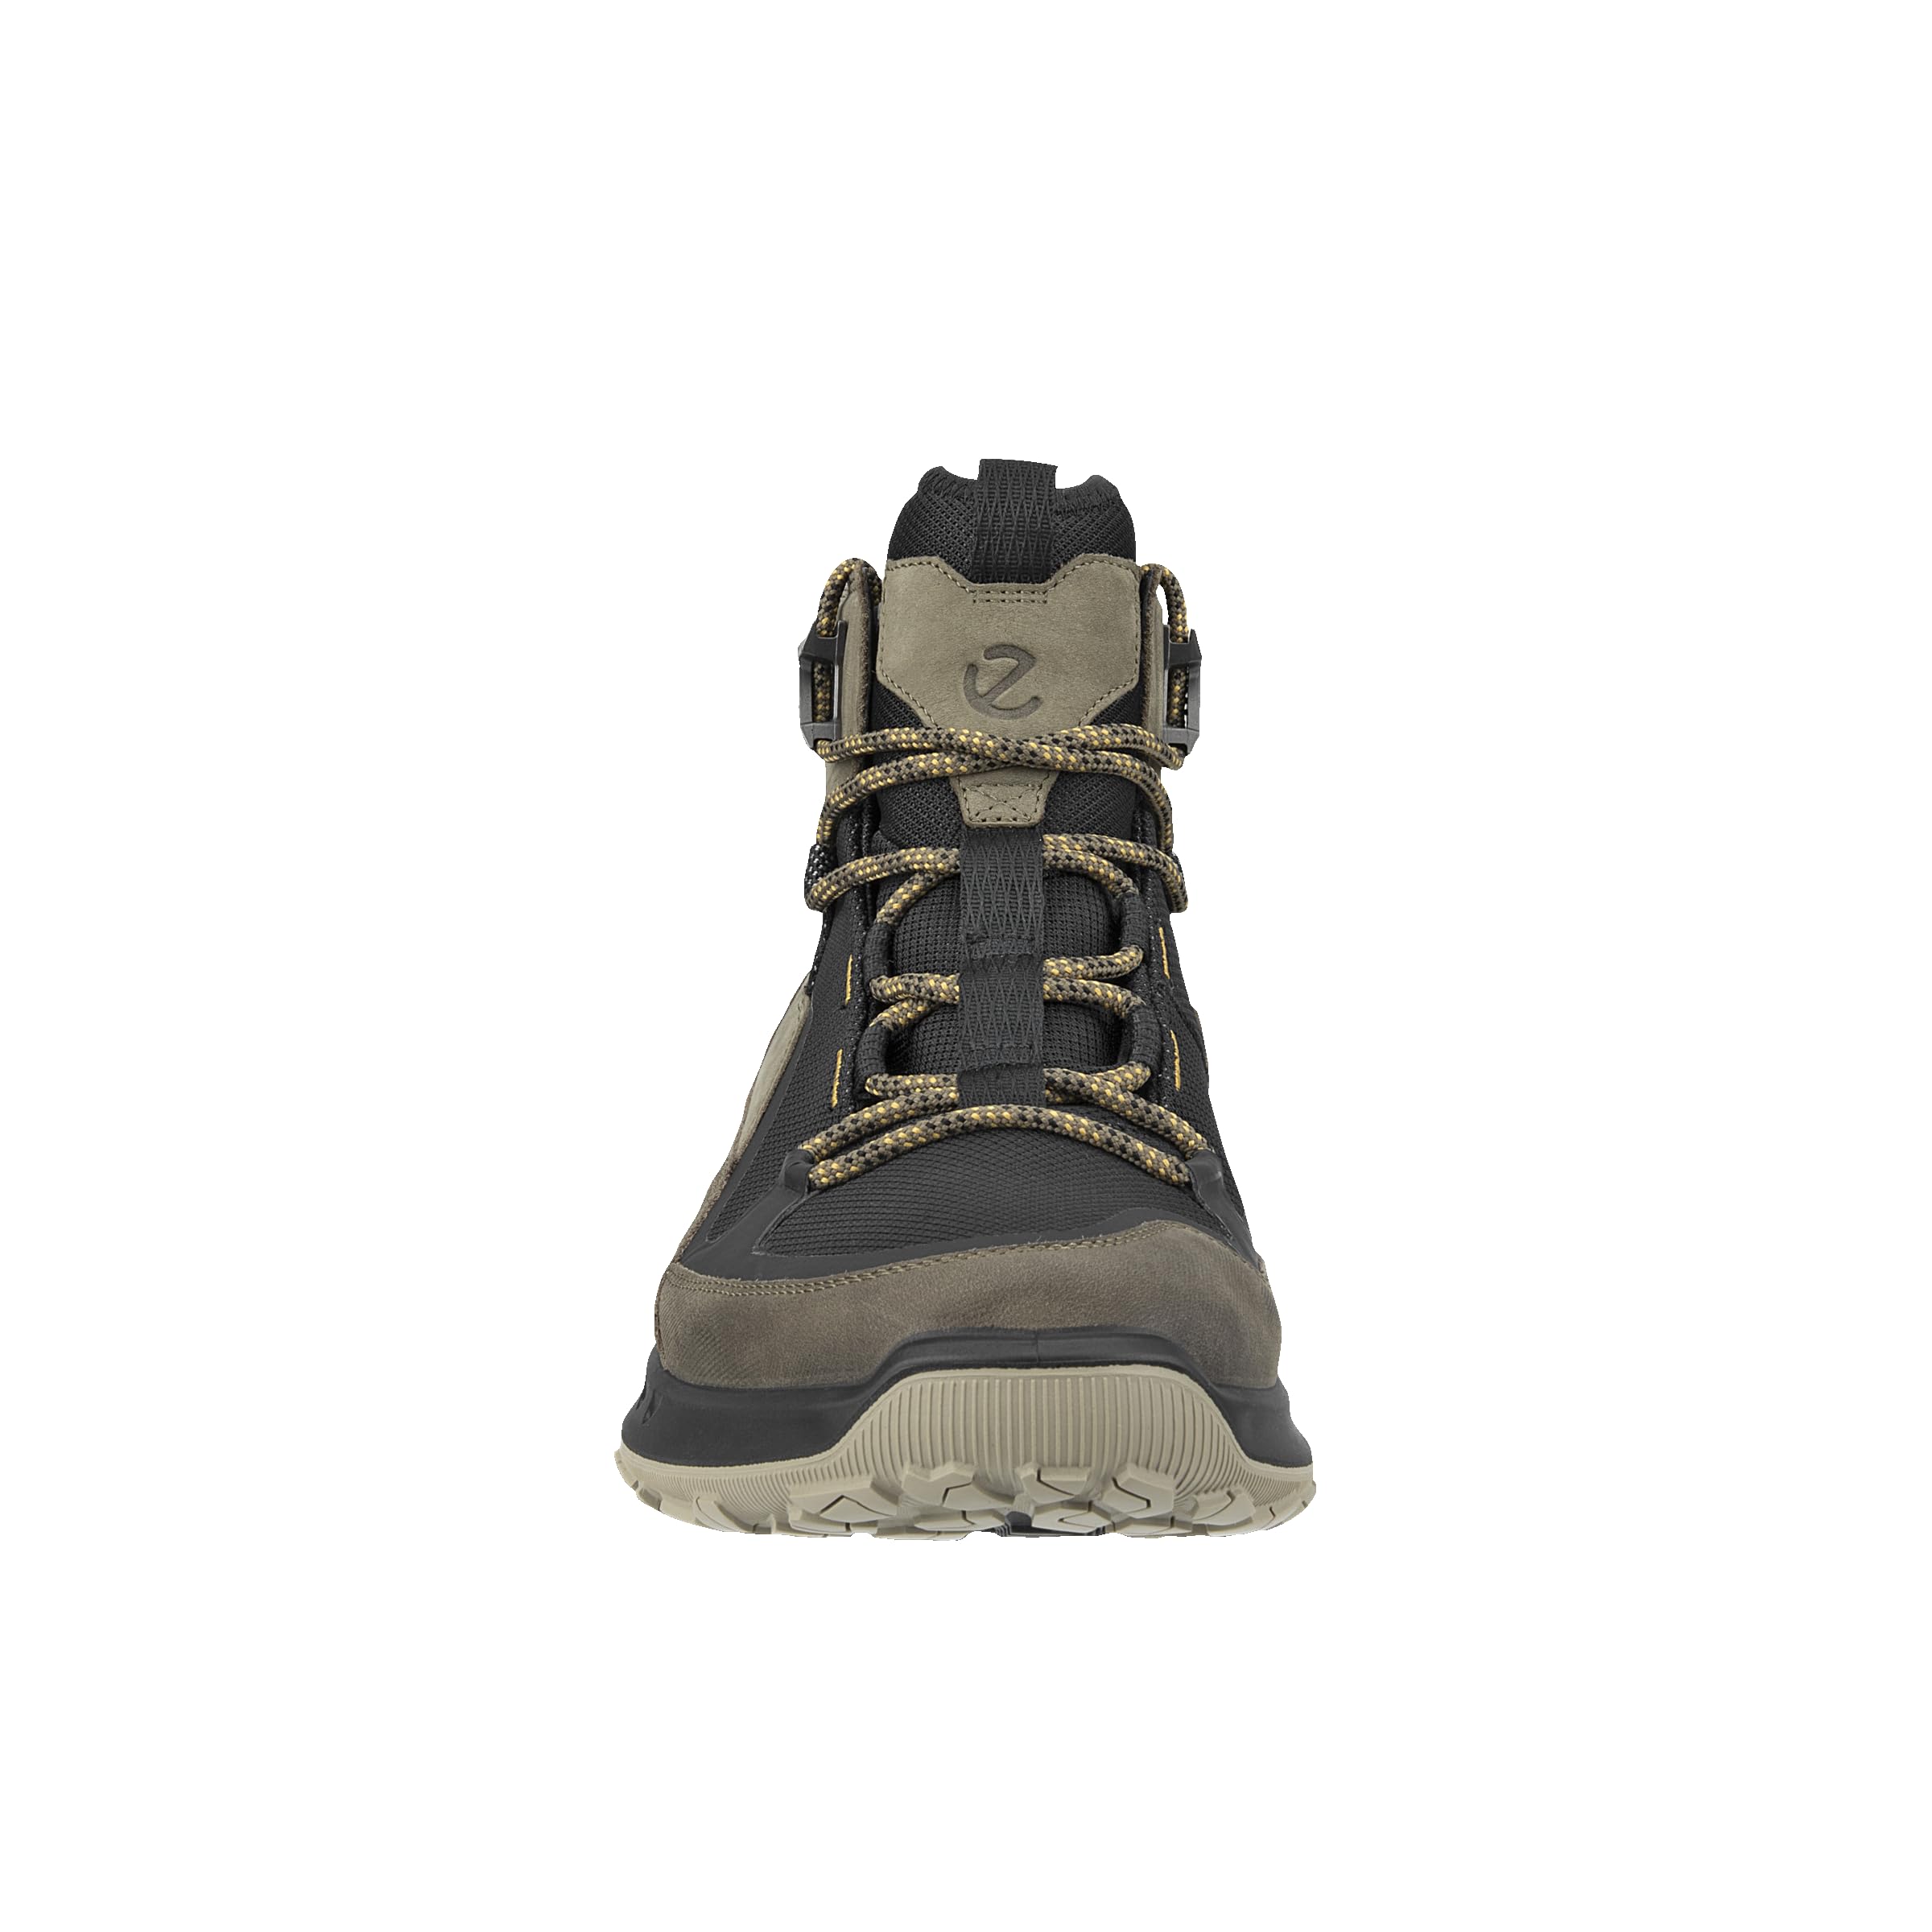 ECCO Men's Ultra Terrain Waterproof Mid Hiking Boot